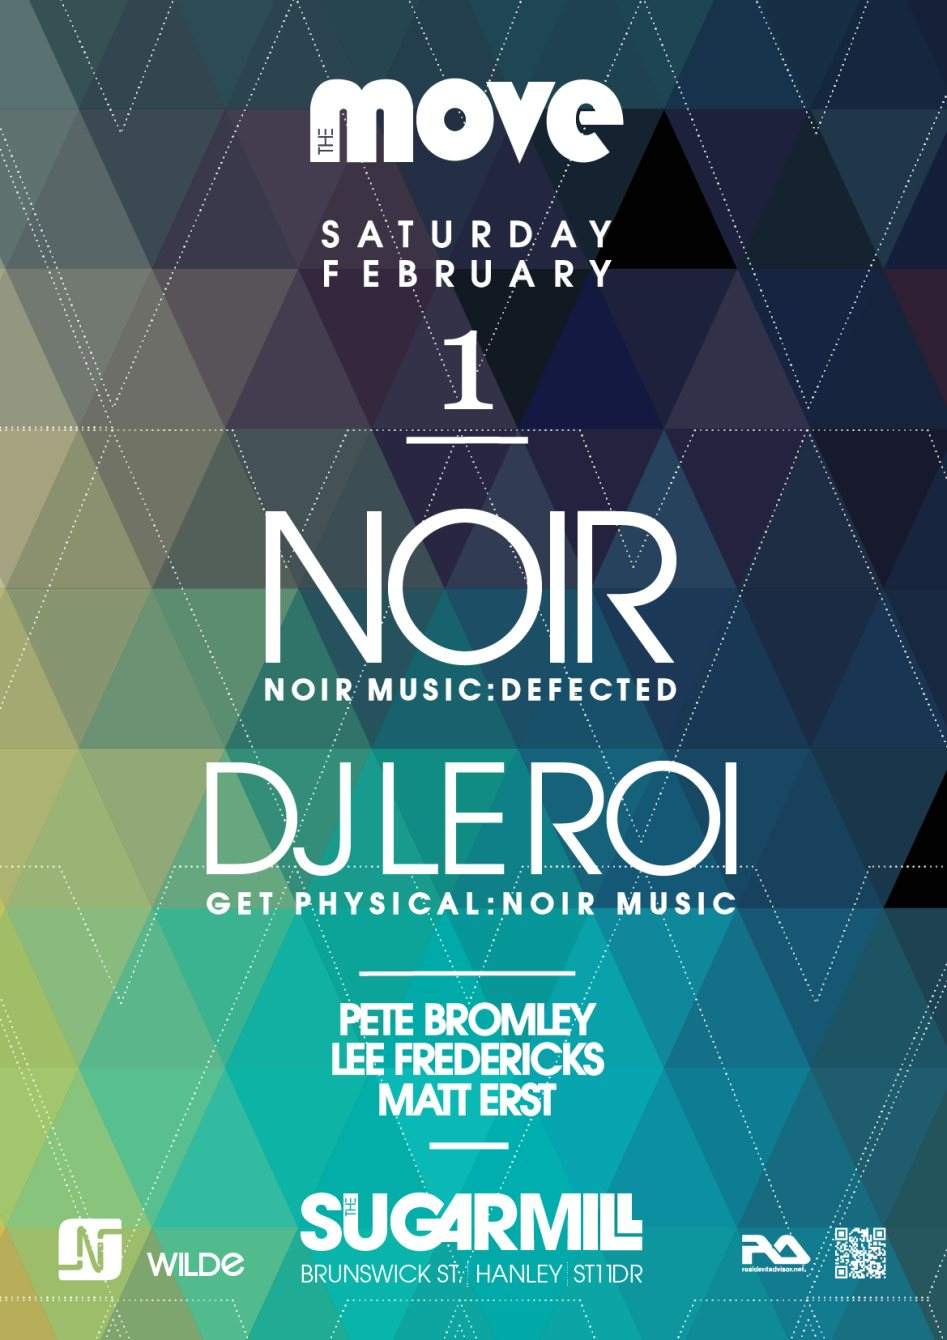 The Move presents A Noir Music Showcase with Noir & DJ Le Roi - Flyer front